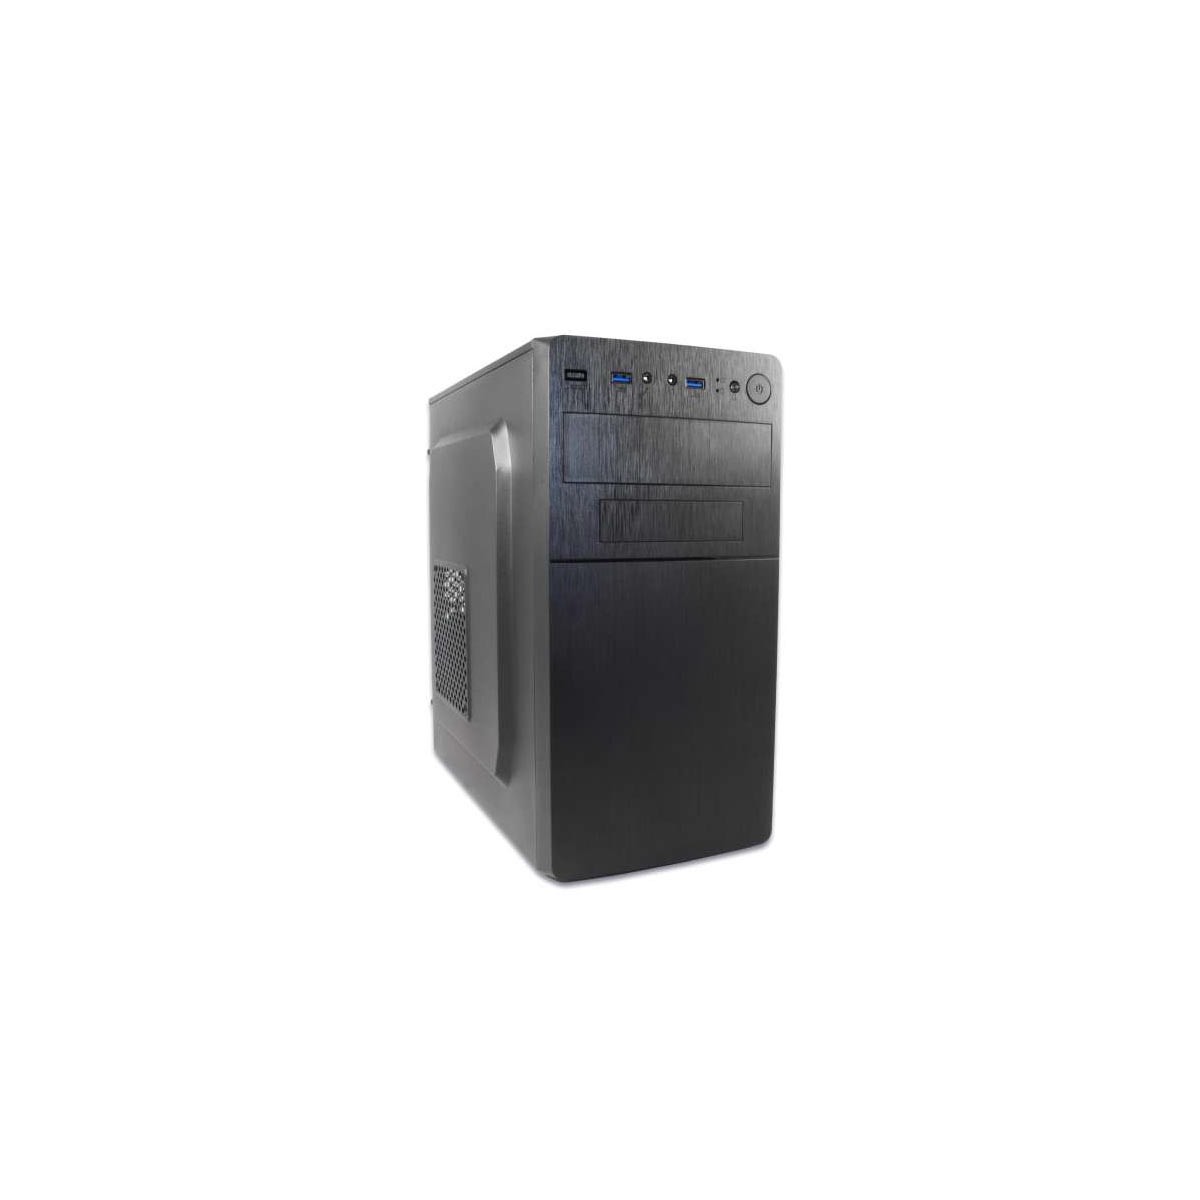 Coolbox Caja Microatx M500 Usb 3.0 500w